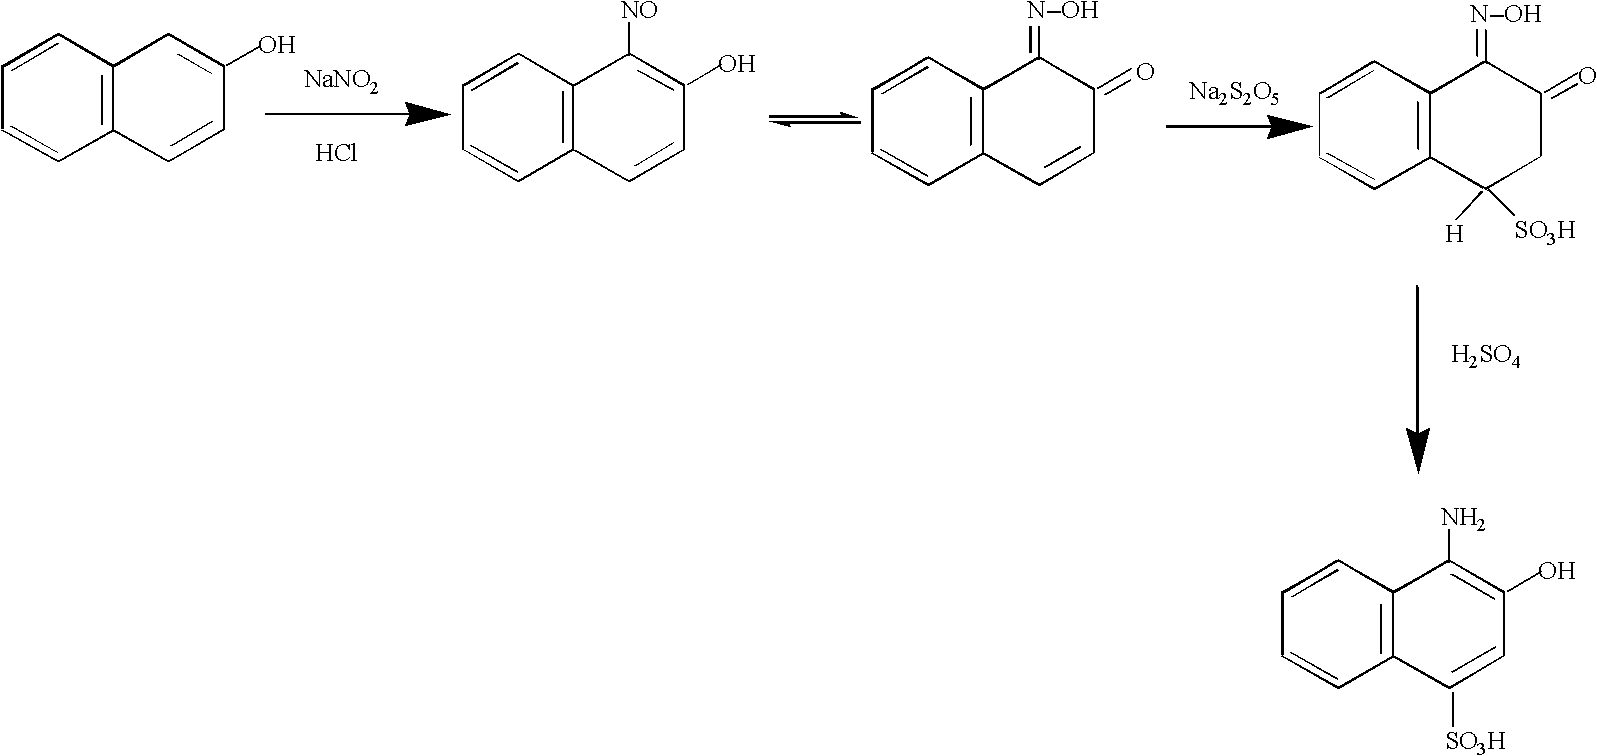 Preparation method of 1-amino-2-naphthol-4-sulfonic acid